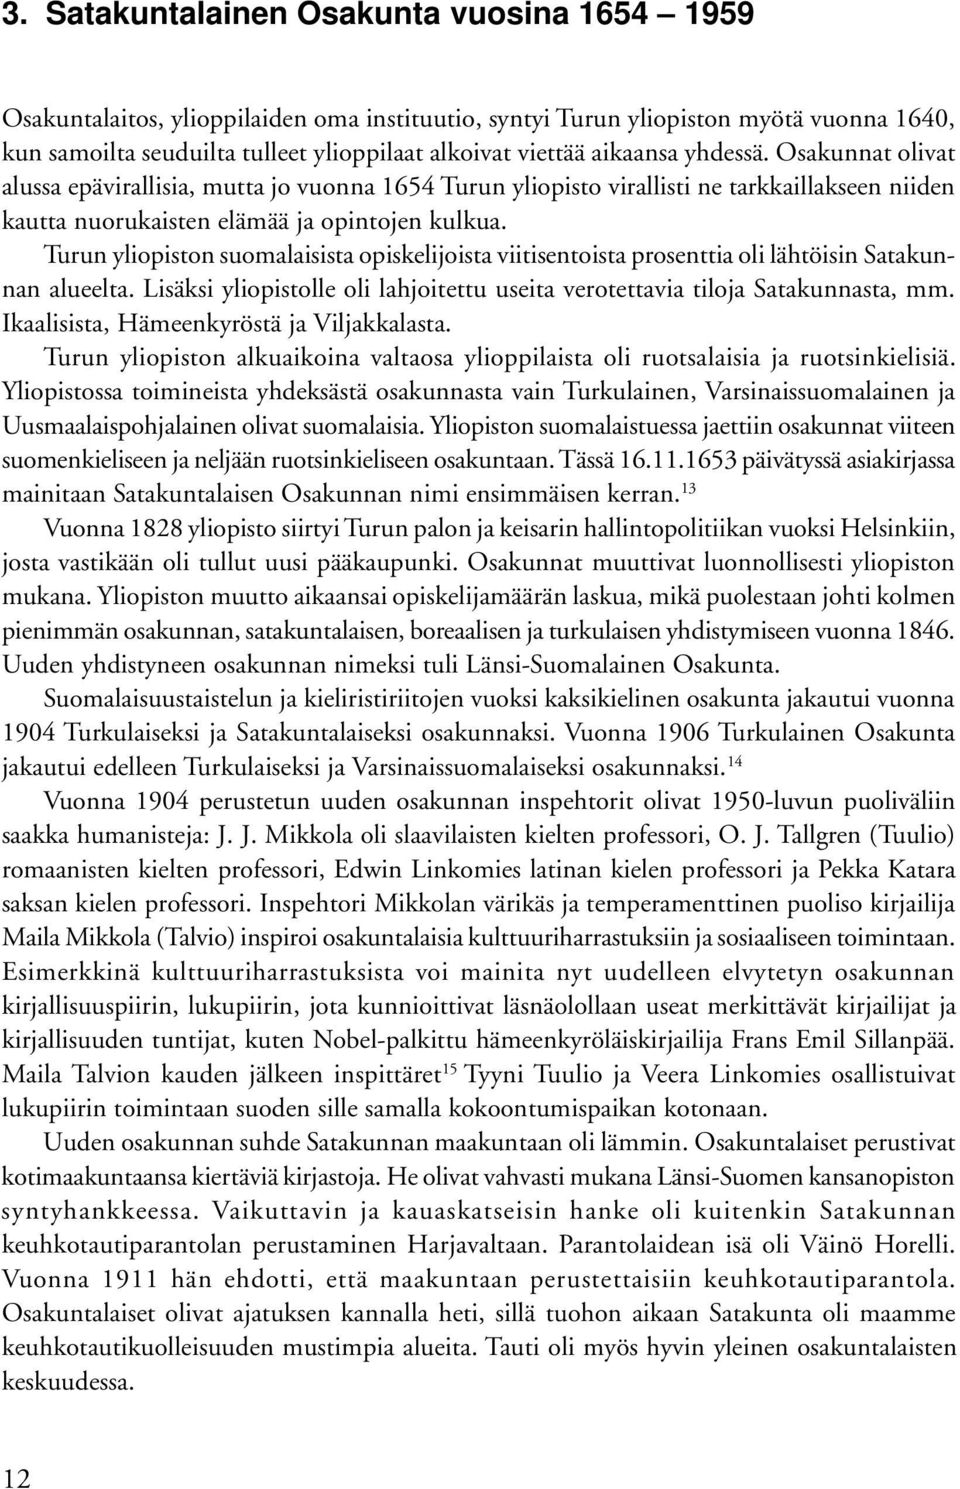 Turun yliopiston suomalaisista opiskelijoista viitisentoista prosenttia oli lähtöisin Satakunnan alueelta. Lisäksi yliopistolle oli lahjoitettu useita verotettavia tiloja Satakunnasta, mm.